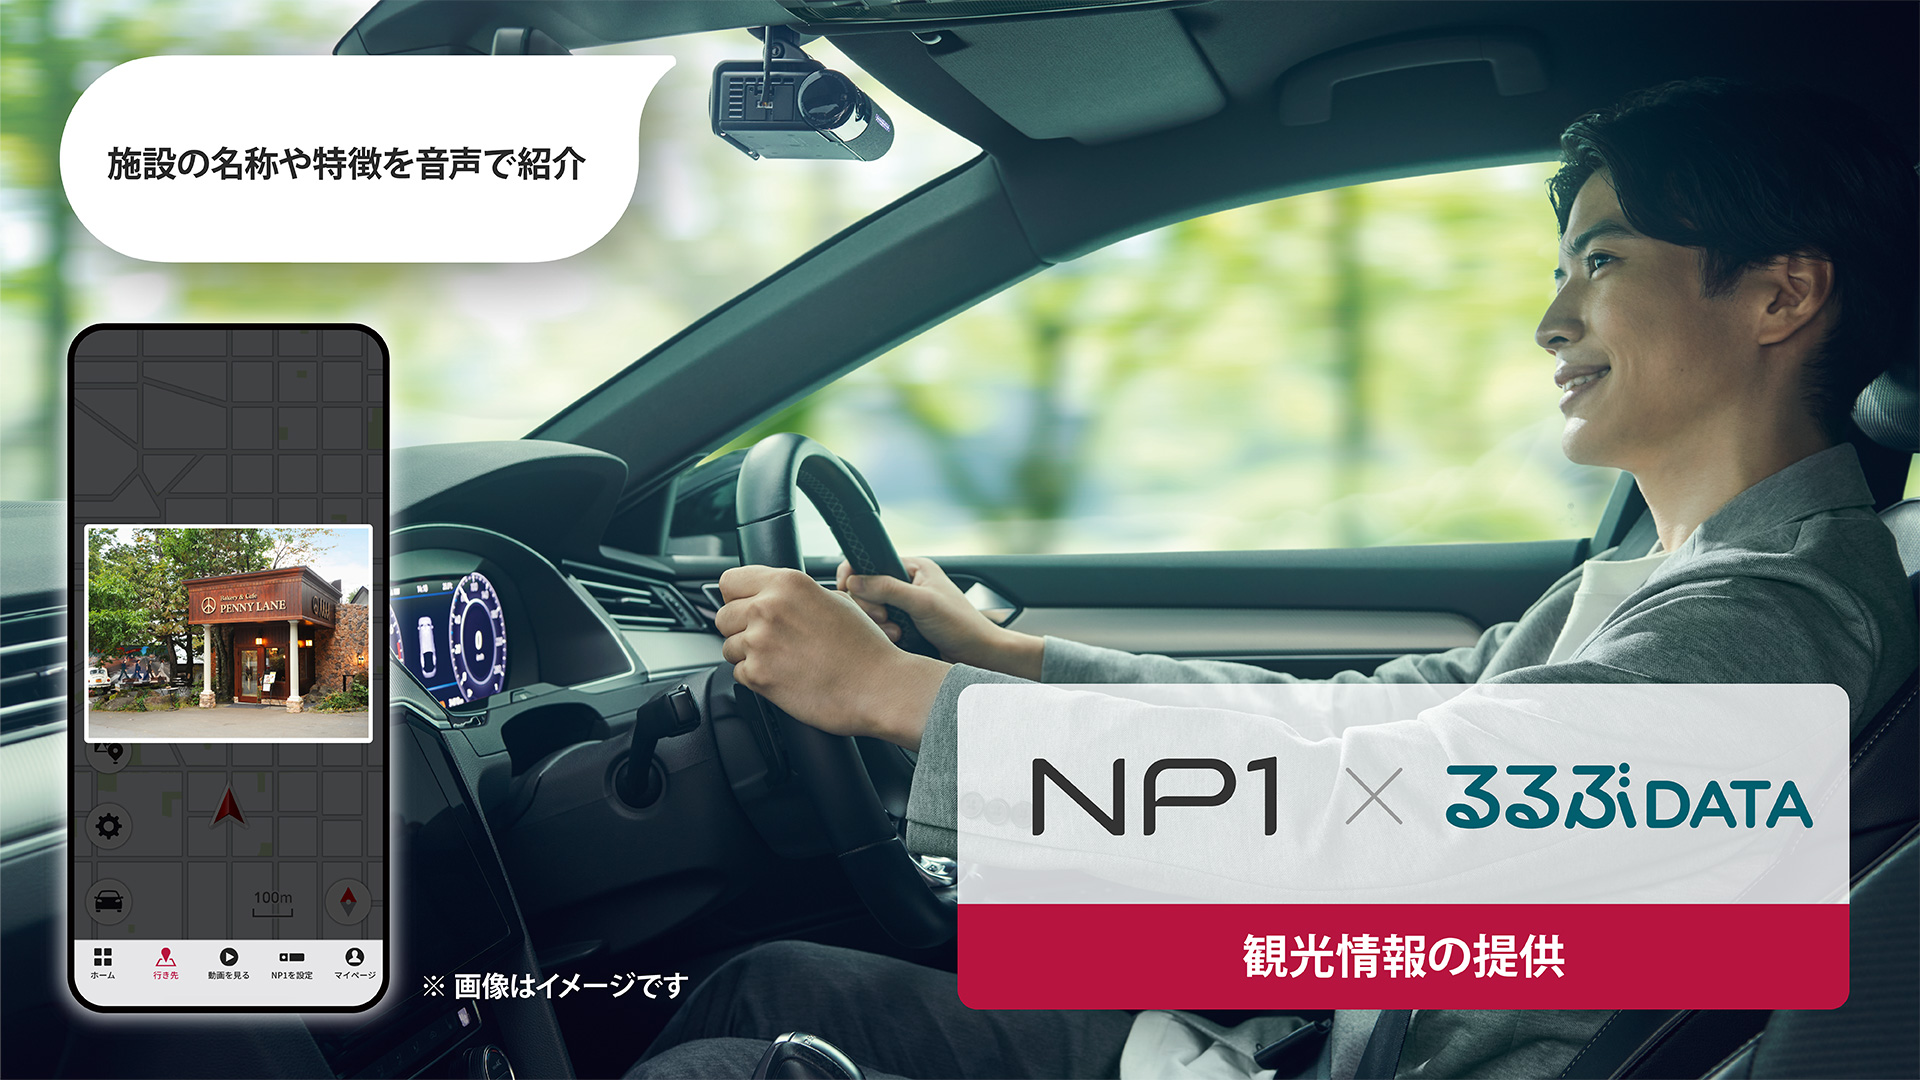 パイオニア「NP1」とJTBの「るるぶDATA」が連携、全国向けに「観光情報レコメンドサービス」を2月27日より提供へ - Car Watch